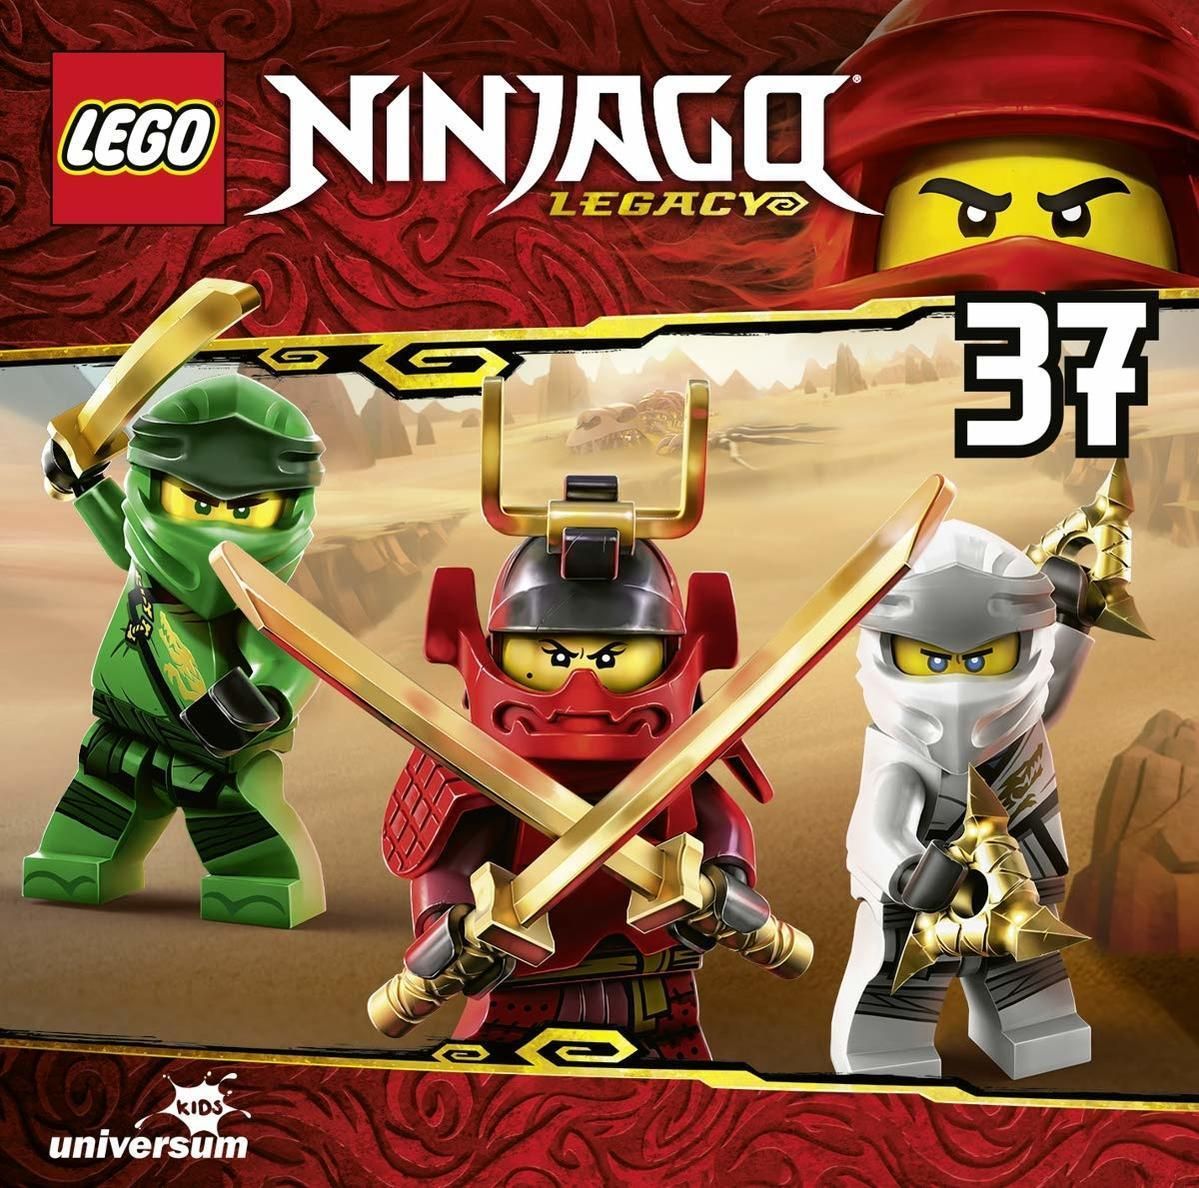 LEGO Ninjago: Hörspiel Vol. 37 (CD(s))